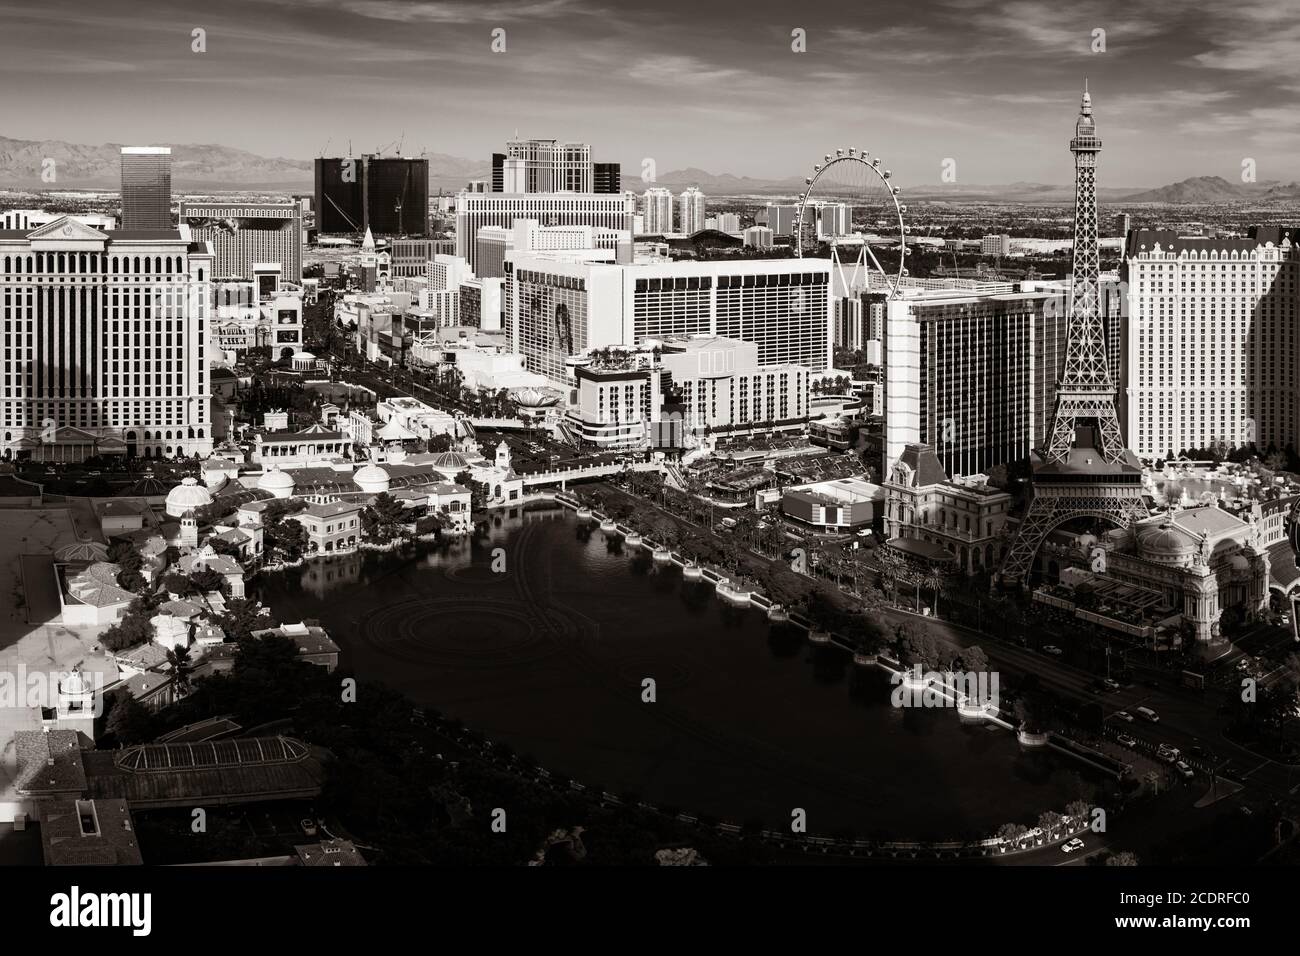 Vue sur la ville et l'horizon urbain avec un casino moderne et l'architecture de la station balnéaire dans le Strip de Las Vegas. Banque D'Images